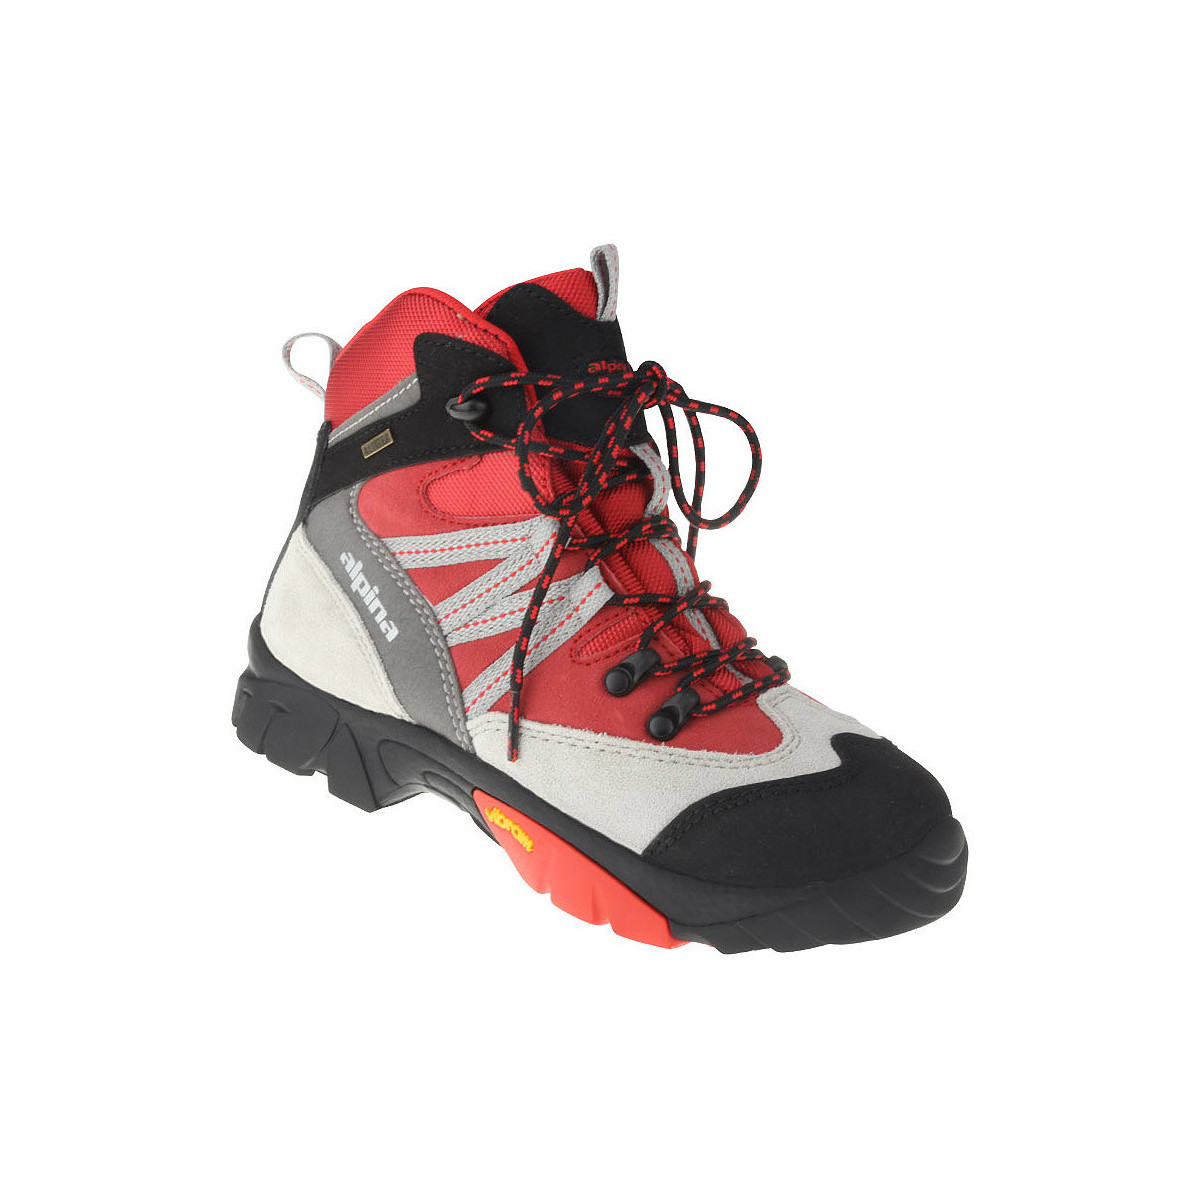 Schuhe Kinder Wanderschuhe Alpina Kinderschuhe Elin Farbe: rot Rot